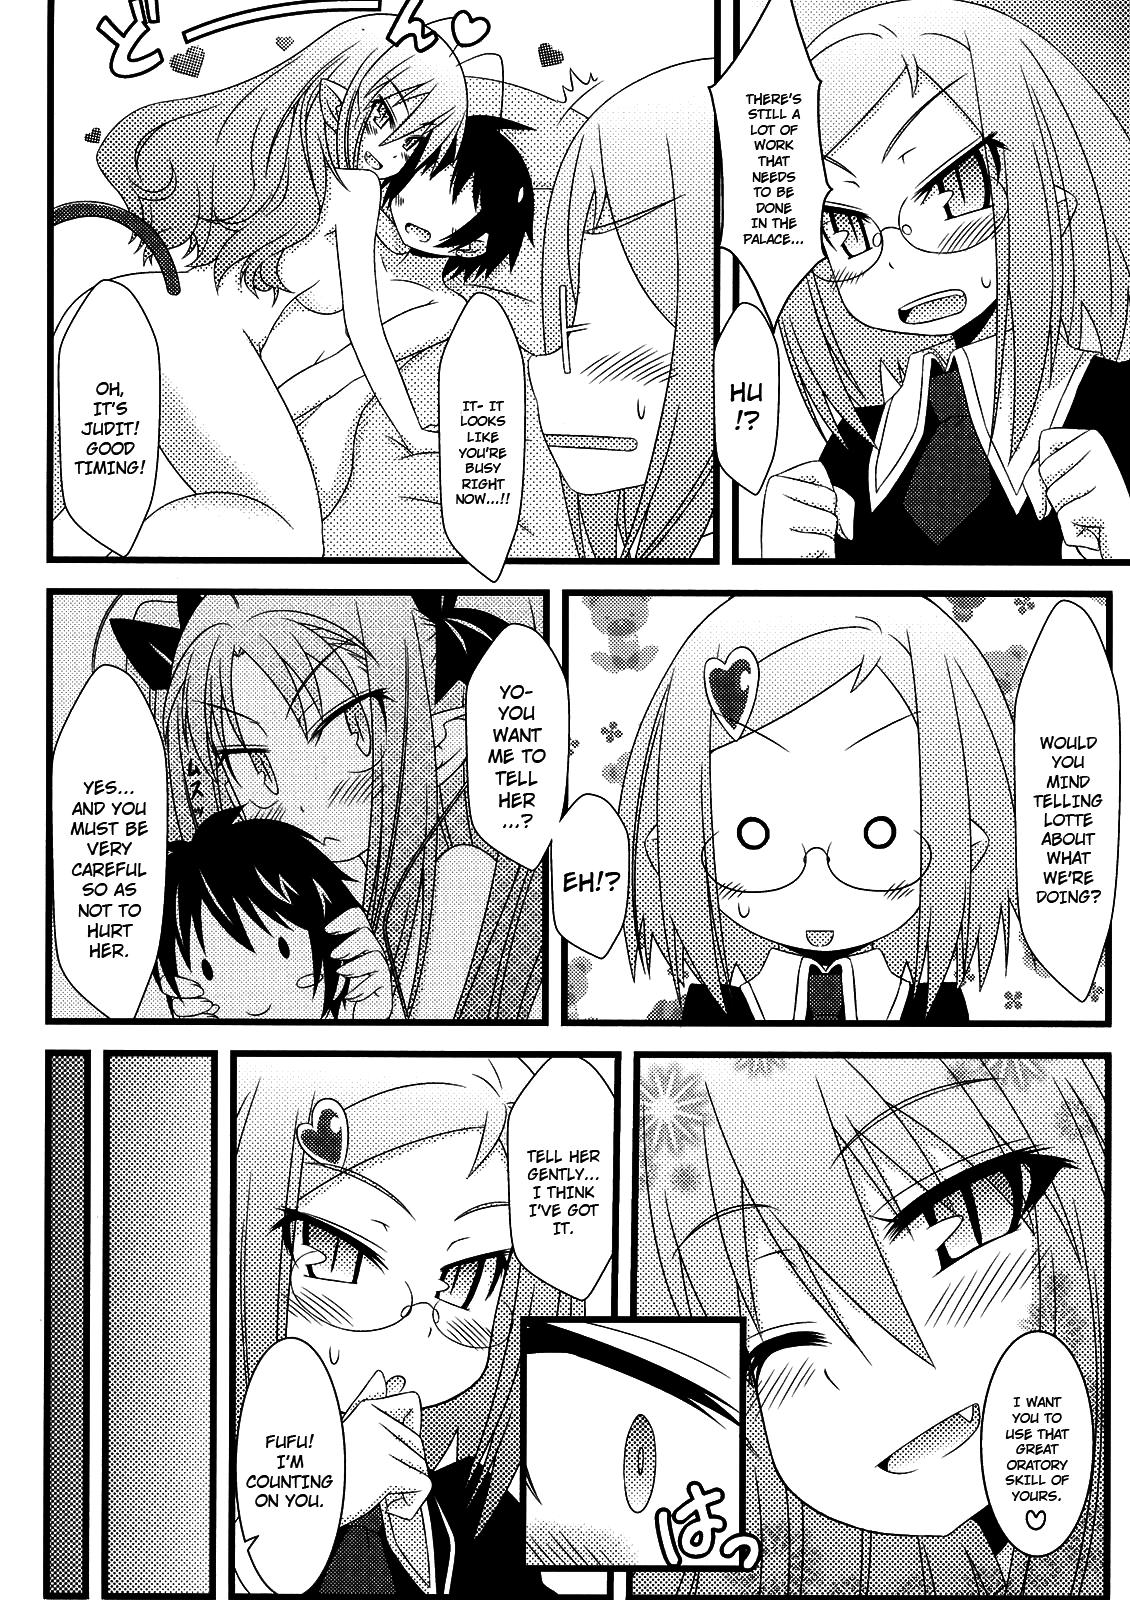 Caliente Hajimete no Omocha! - Lotte no omocha Teenies - Page 11